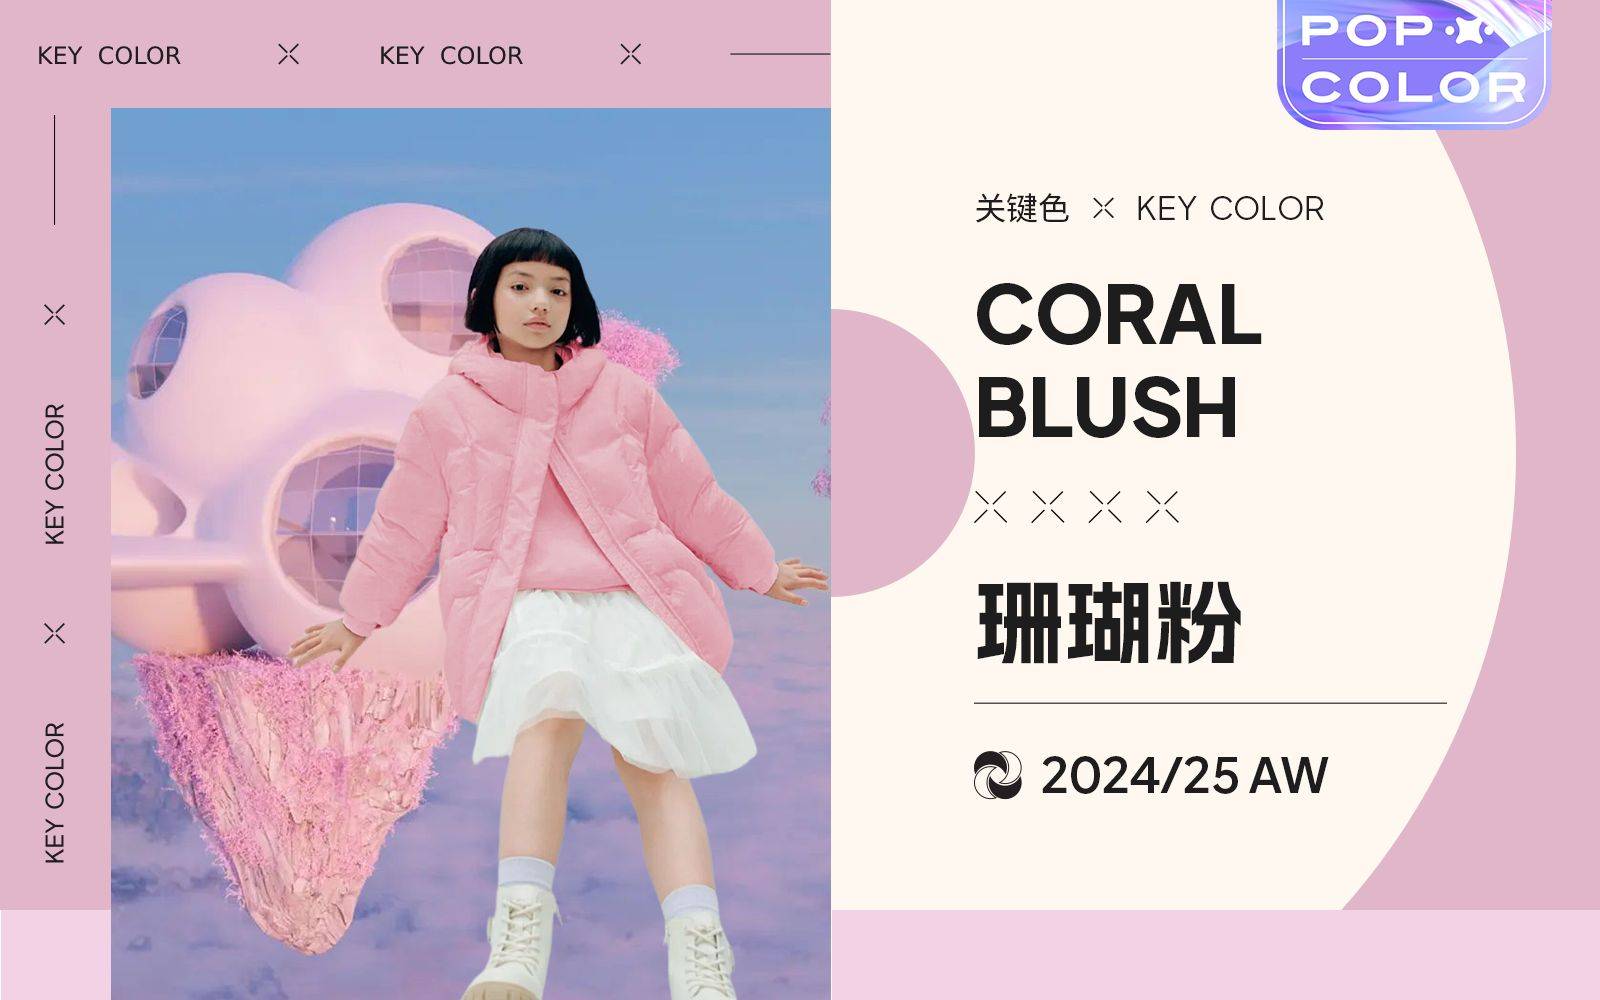 【POP服装趋势网】 珊瑚粉女童色彩流行趋势插图